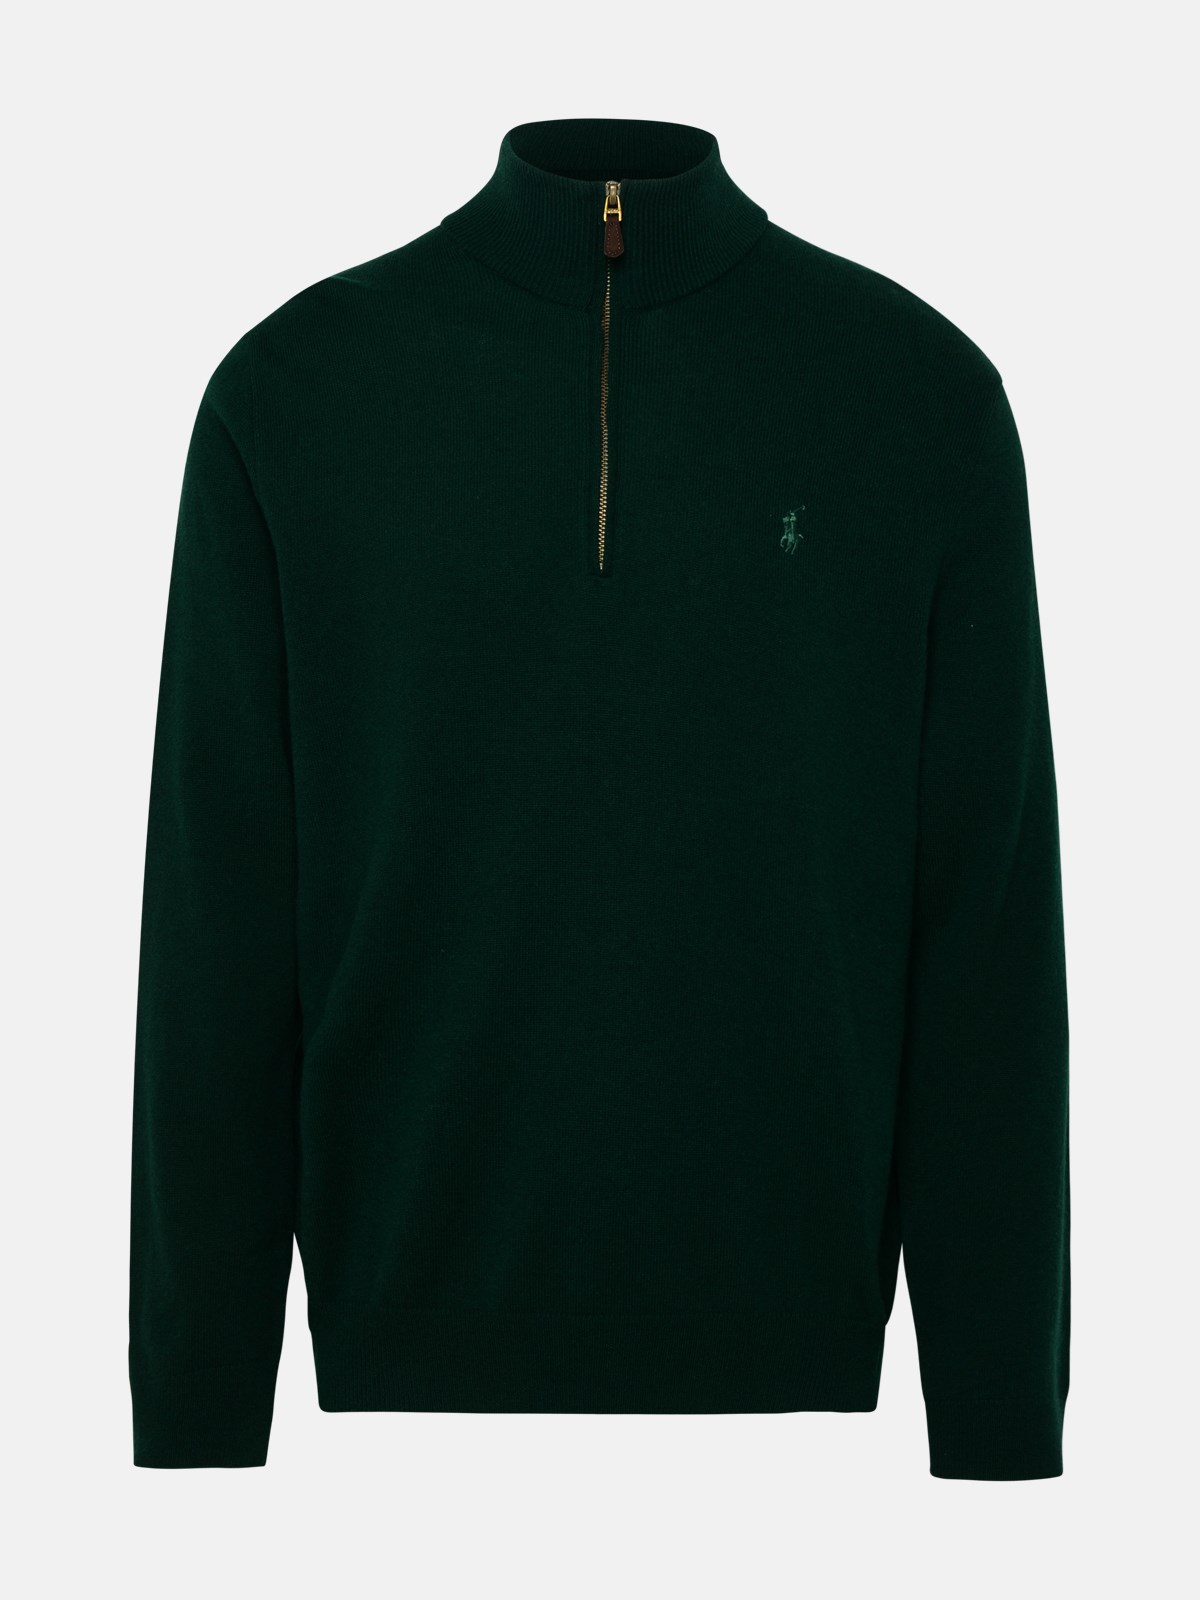 Polo Ralph Lauren Green Wool Sweater